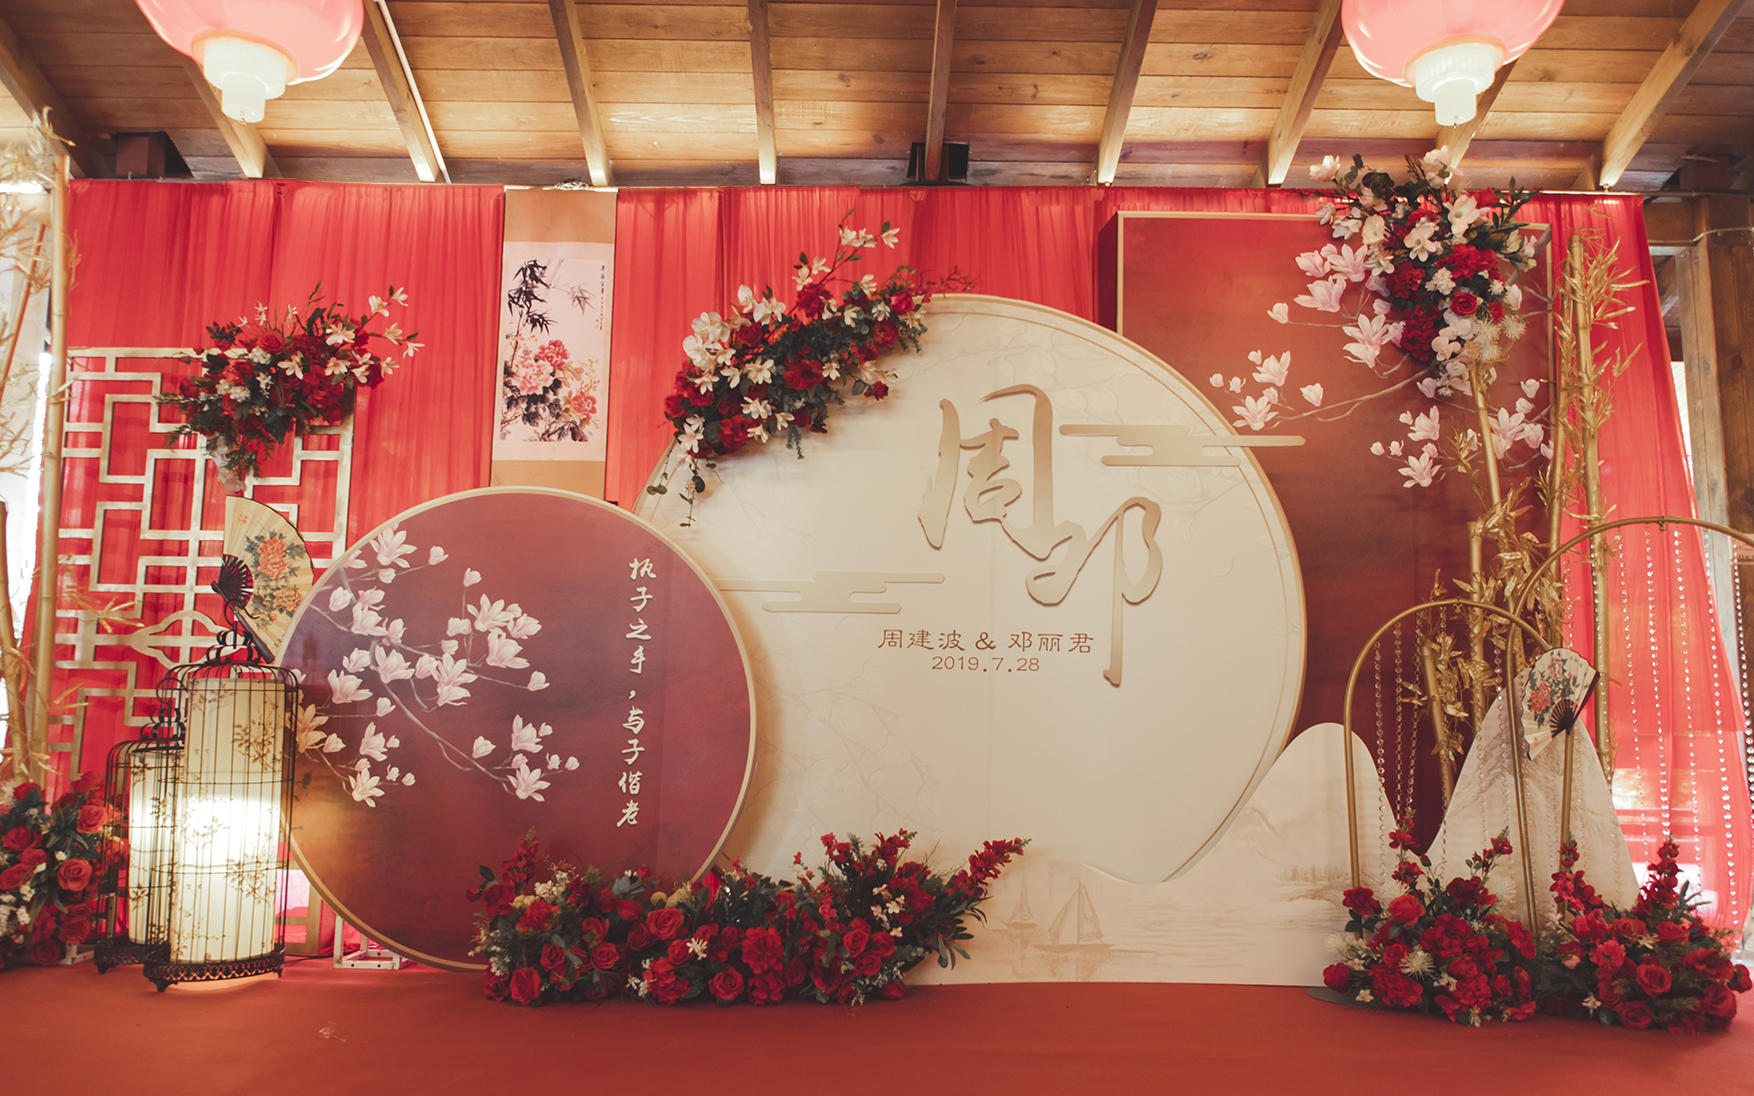 【柏菲婚典】传统中国风中式婚礼